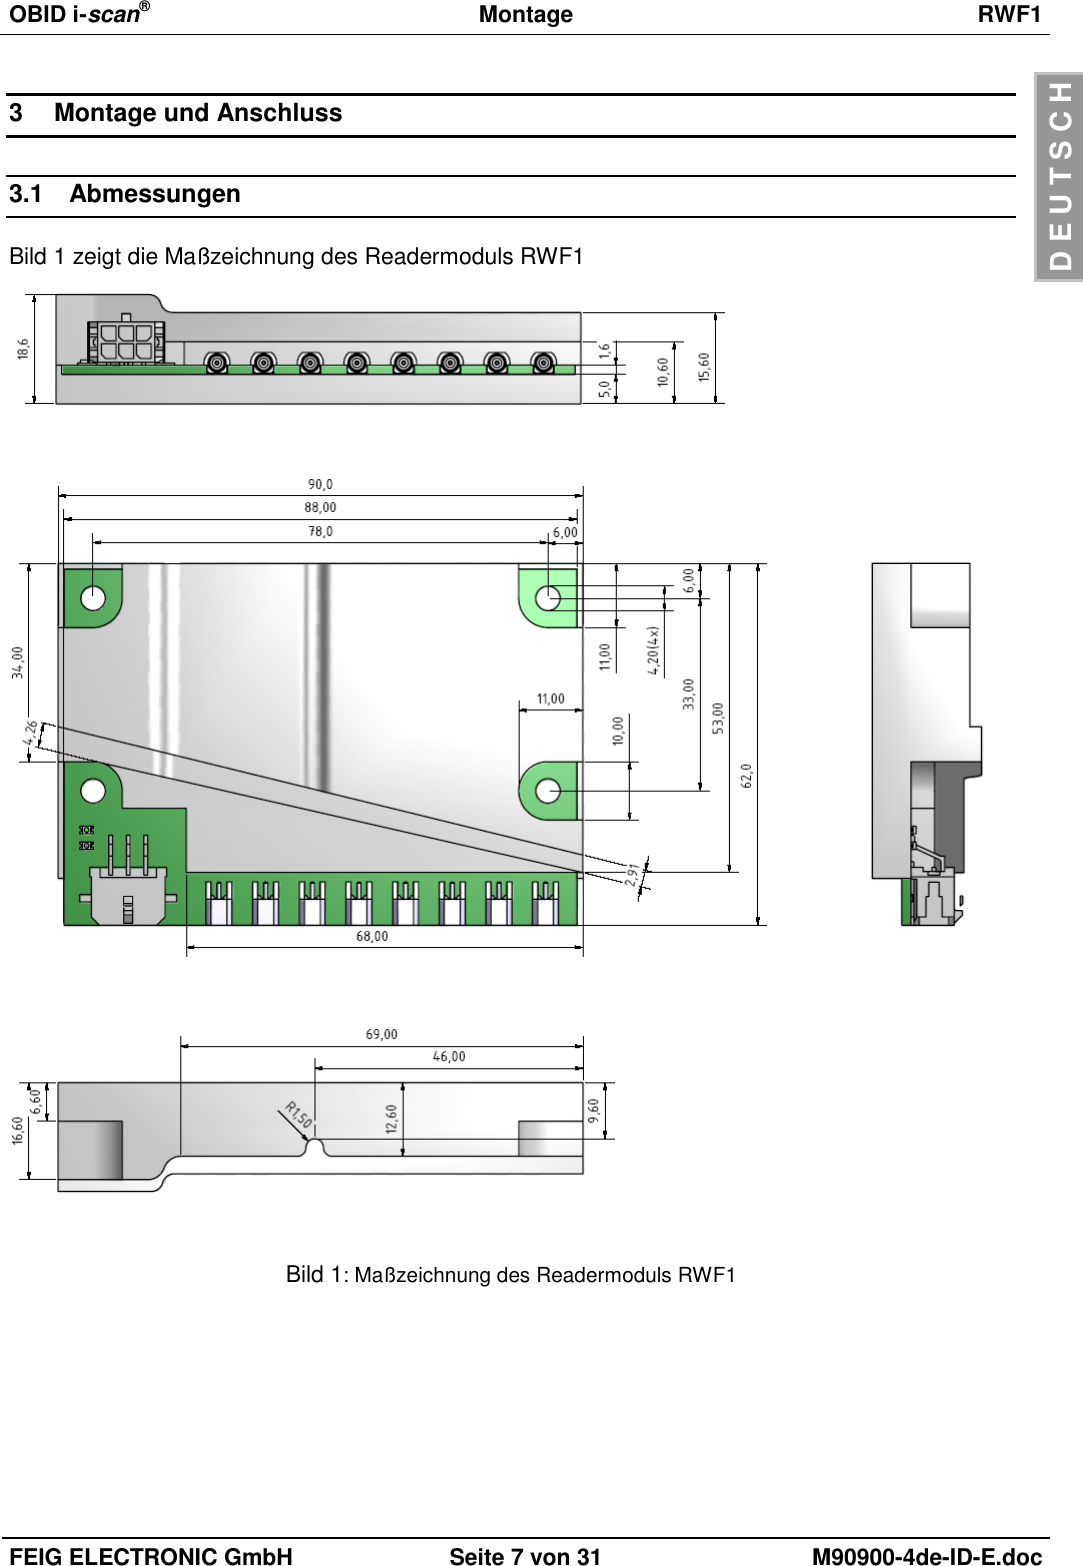 OBID i-scan®  Montage RWF1  FEIG ELECTRONIC GmbH Seite 7 von 31 M90900-4de-ID-E.doc  D E U T S C H 3  Montage und Anschluss 3.1  Abmessungen Bild 1 zeigt die Maßzeichnung des Readermoduls RWF1        Bild 1: Maßzeichnung des Readermoduls RWF1  